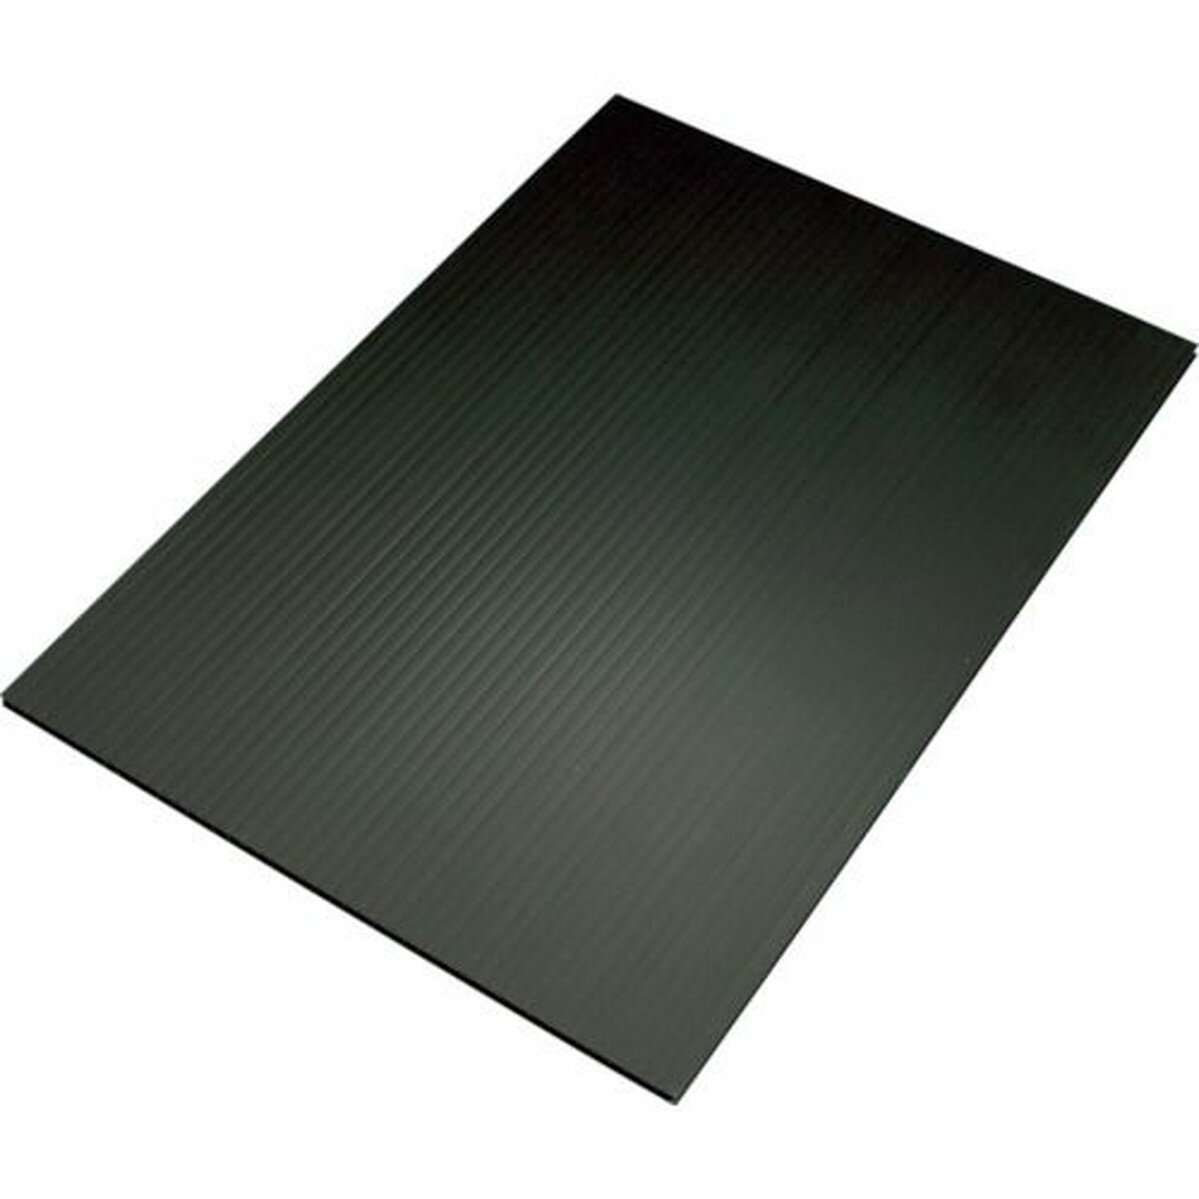 住化 プラダン サンプライHP40060 3×6板ブラック 1枚 (HP40060-BL)